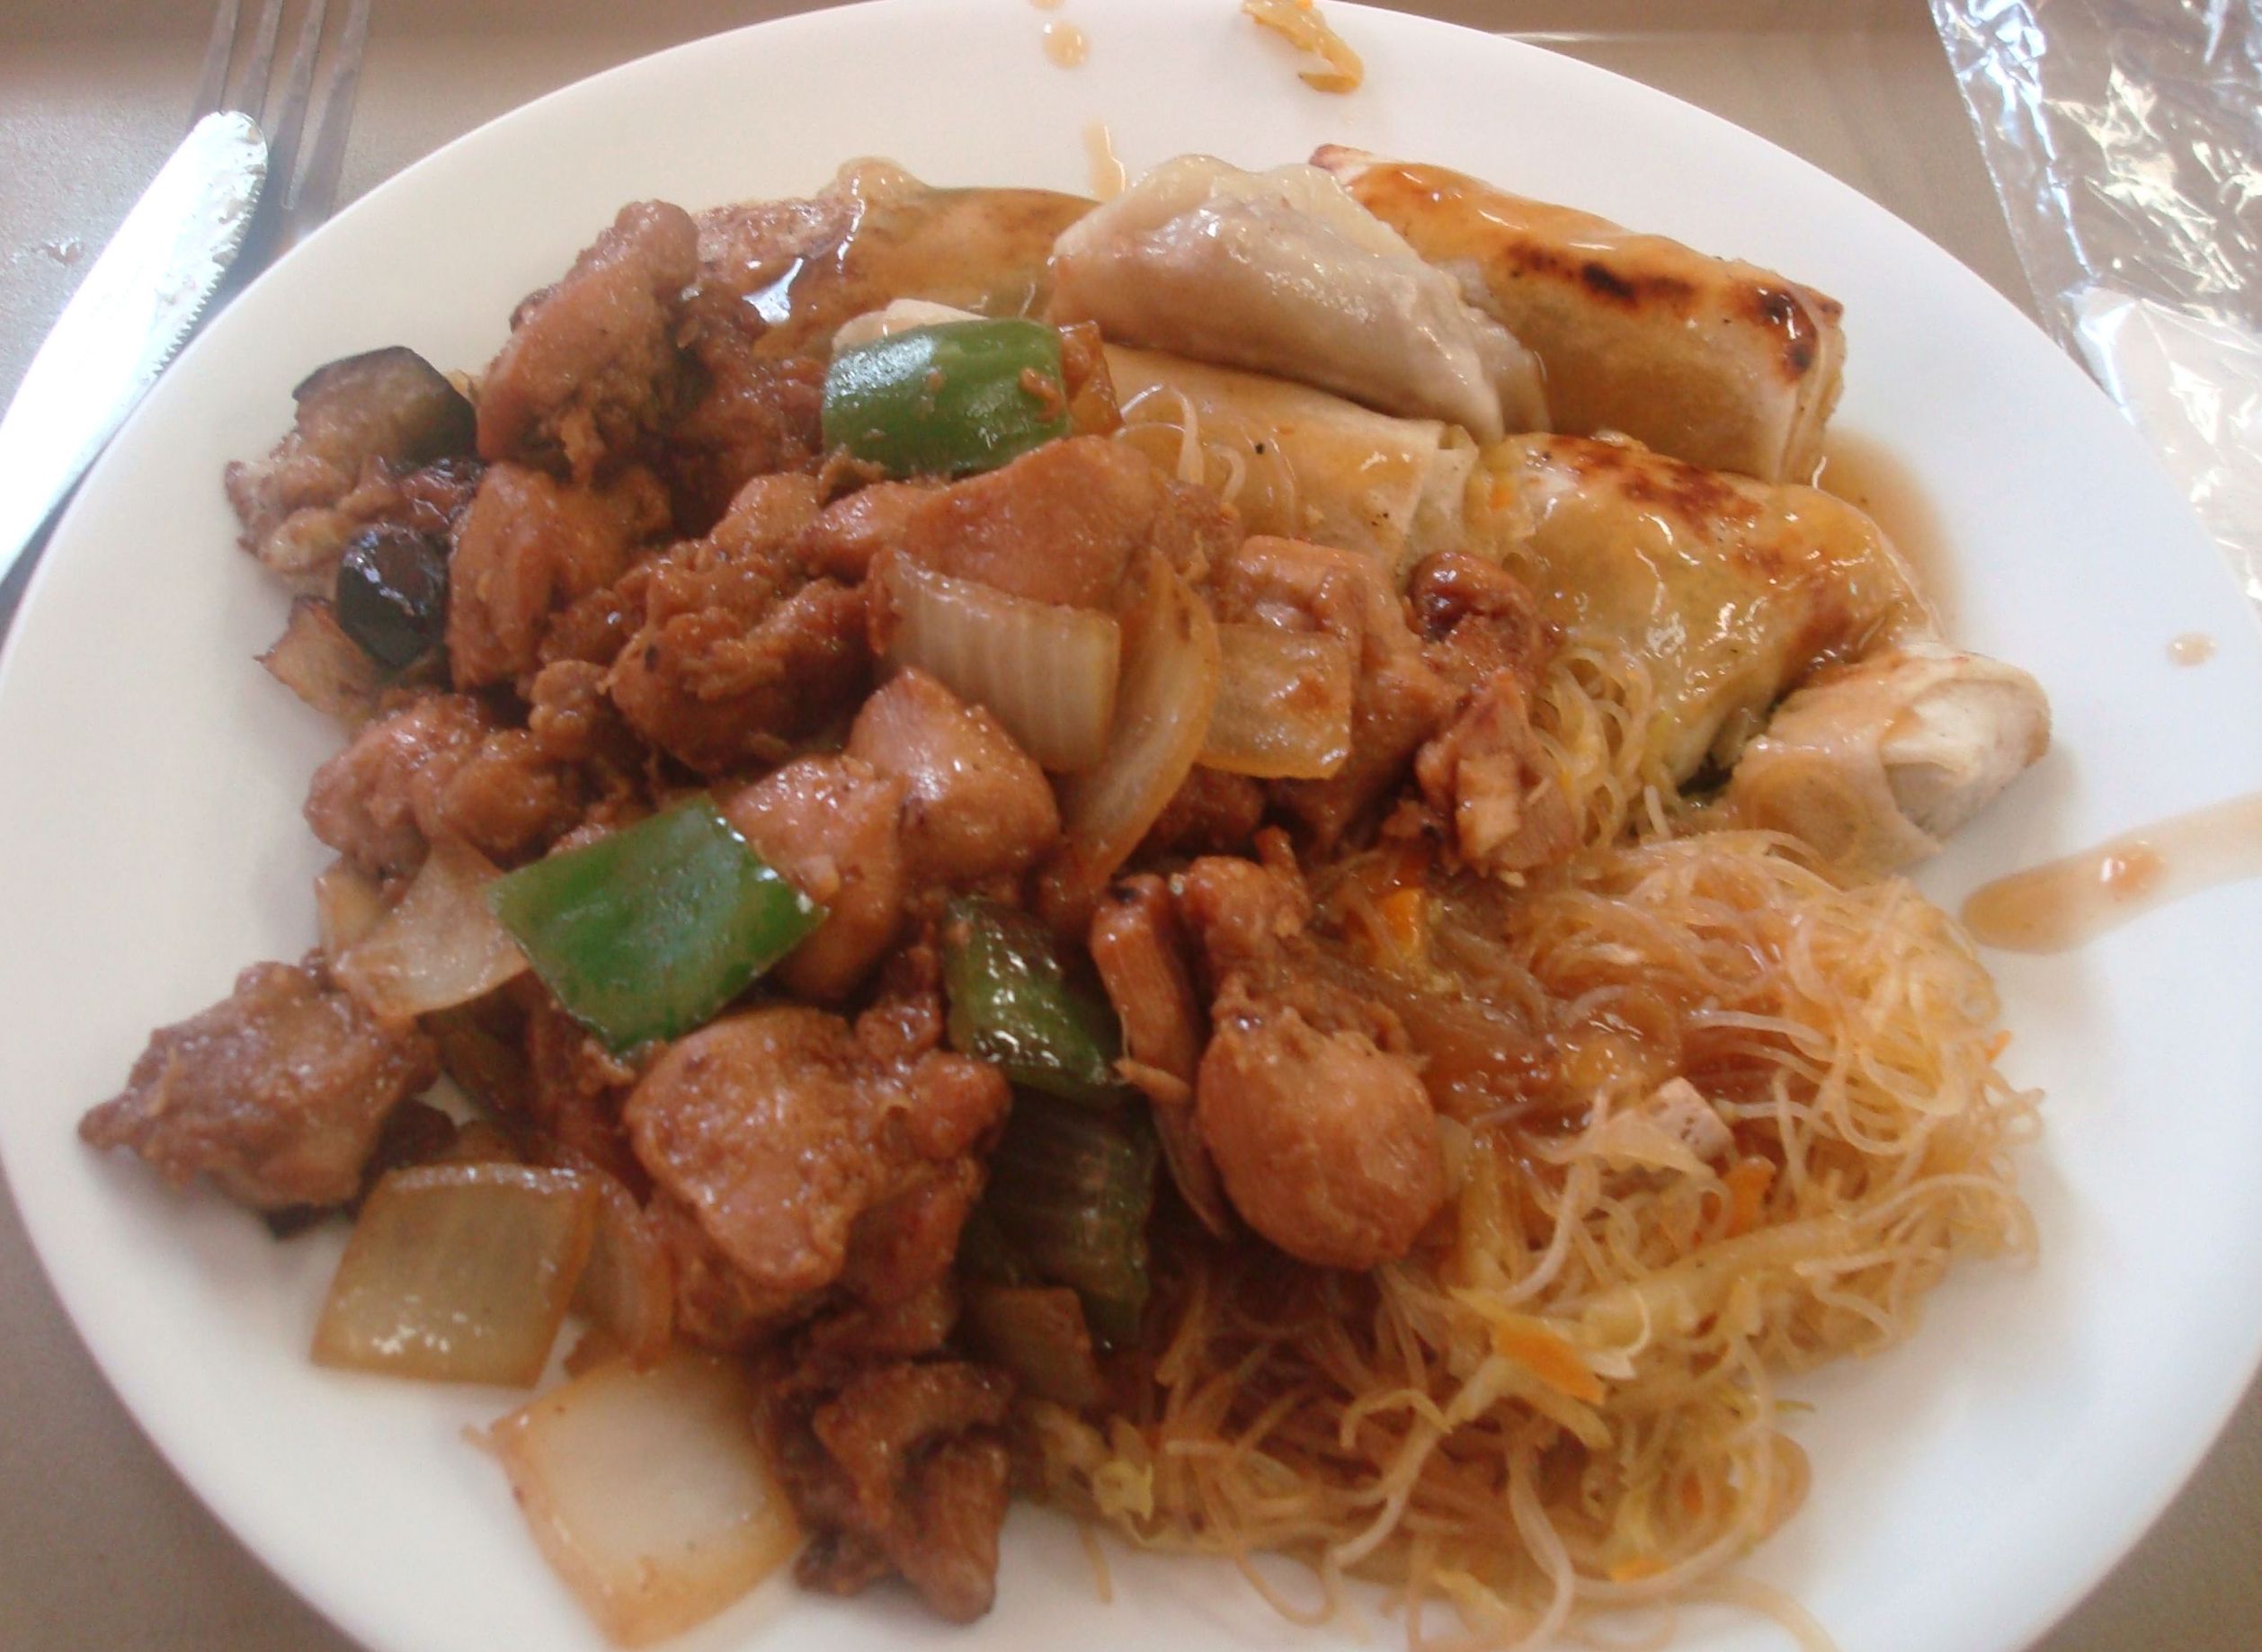 Aogobom - Comida chinesa - Onde Comer em Salvador - Restaurantes chineses - Bares e restaurantes em Salvador